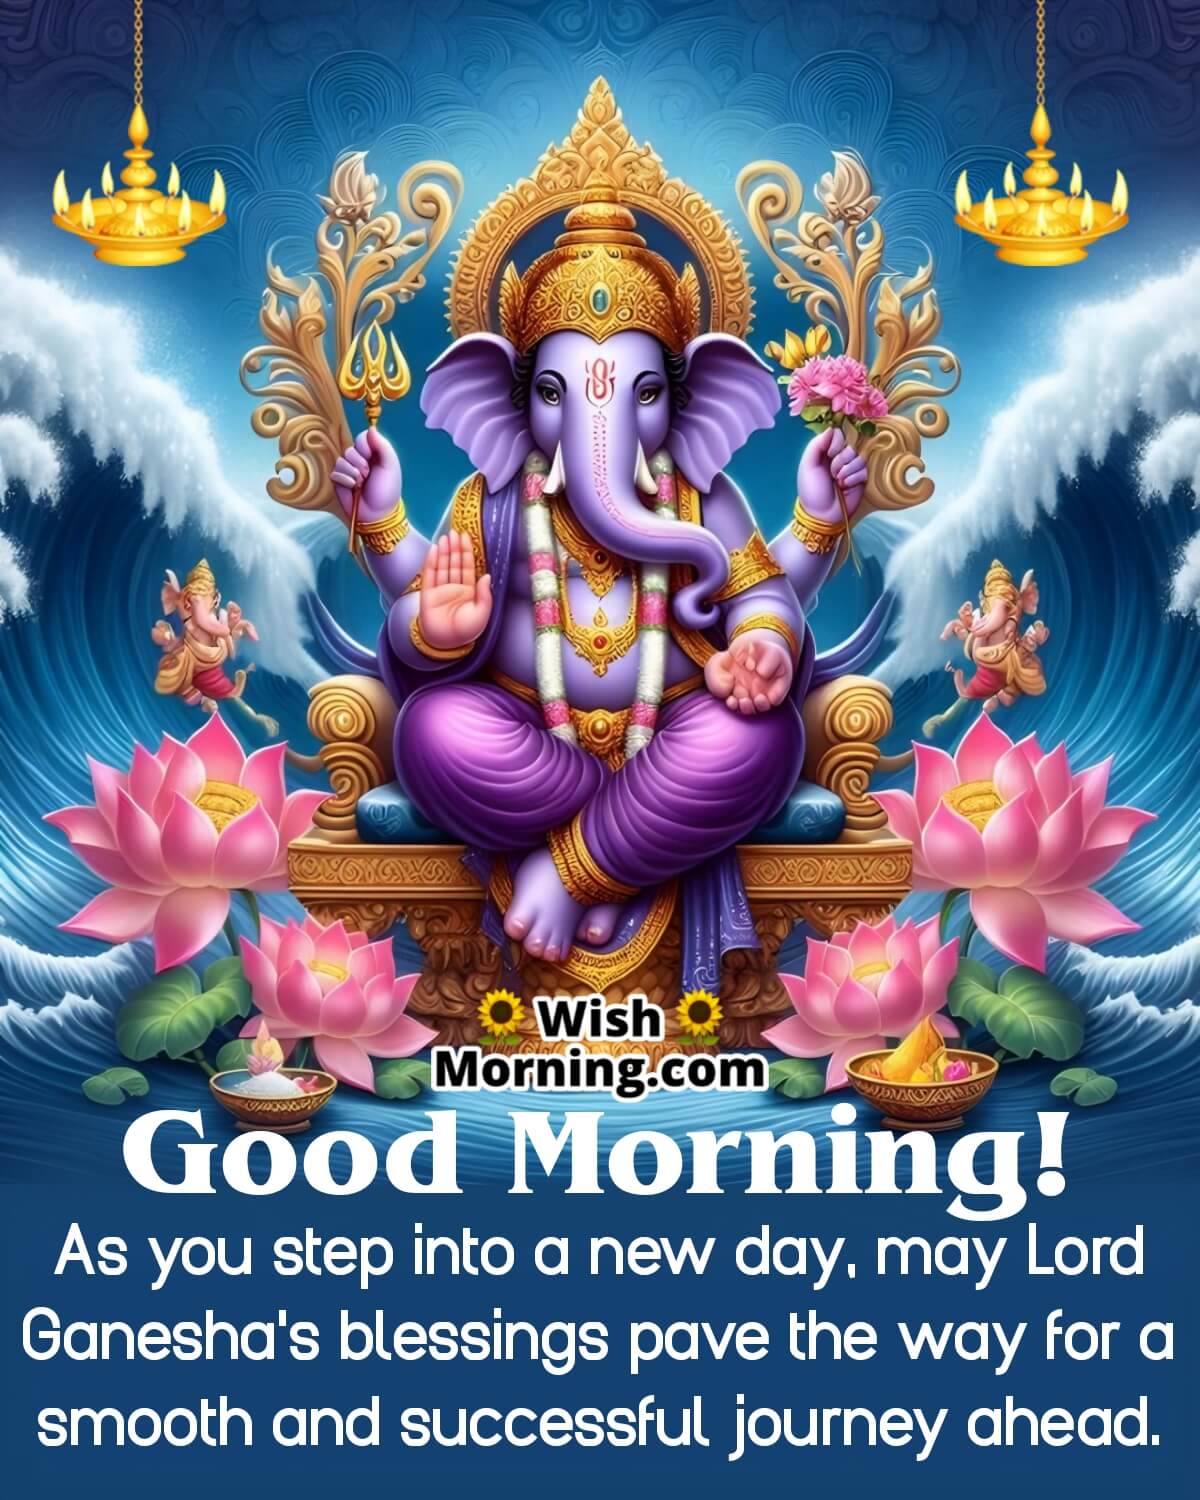 Good Morning Lord Ganesh Image